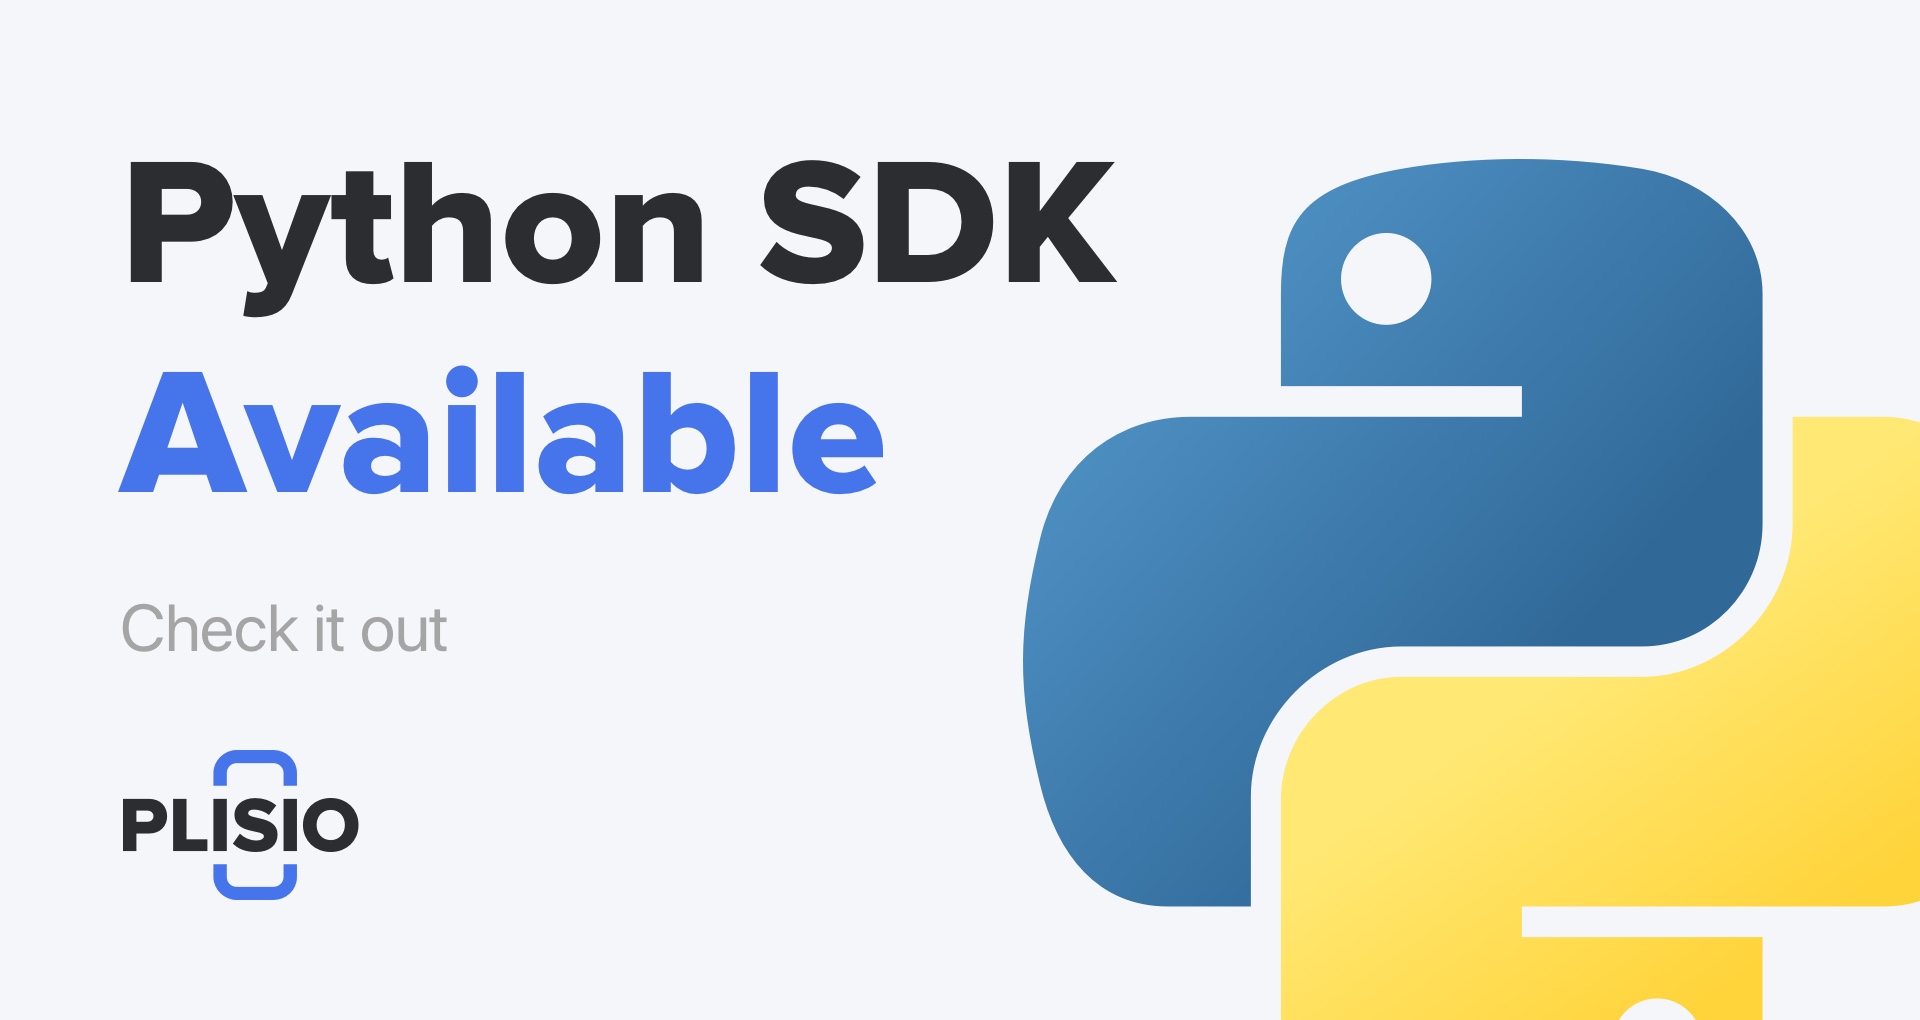 Python SDK Artık Kullanılabilir. Buna bir bak!